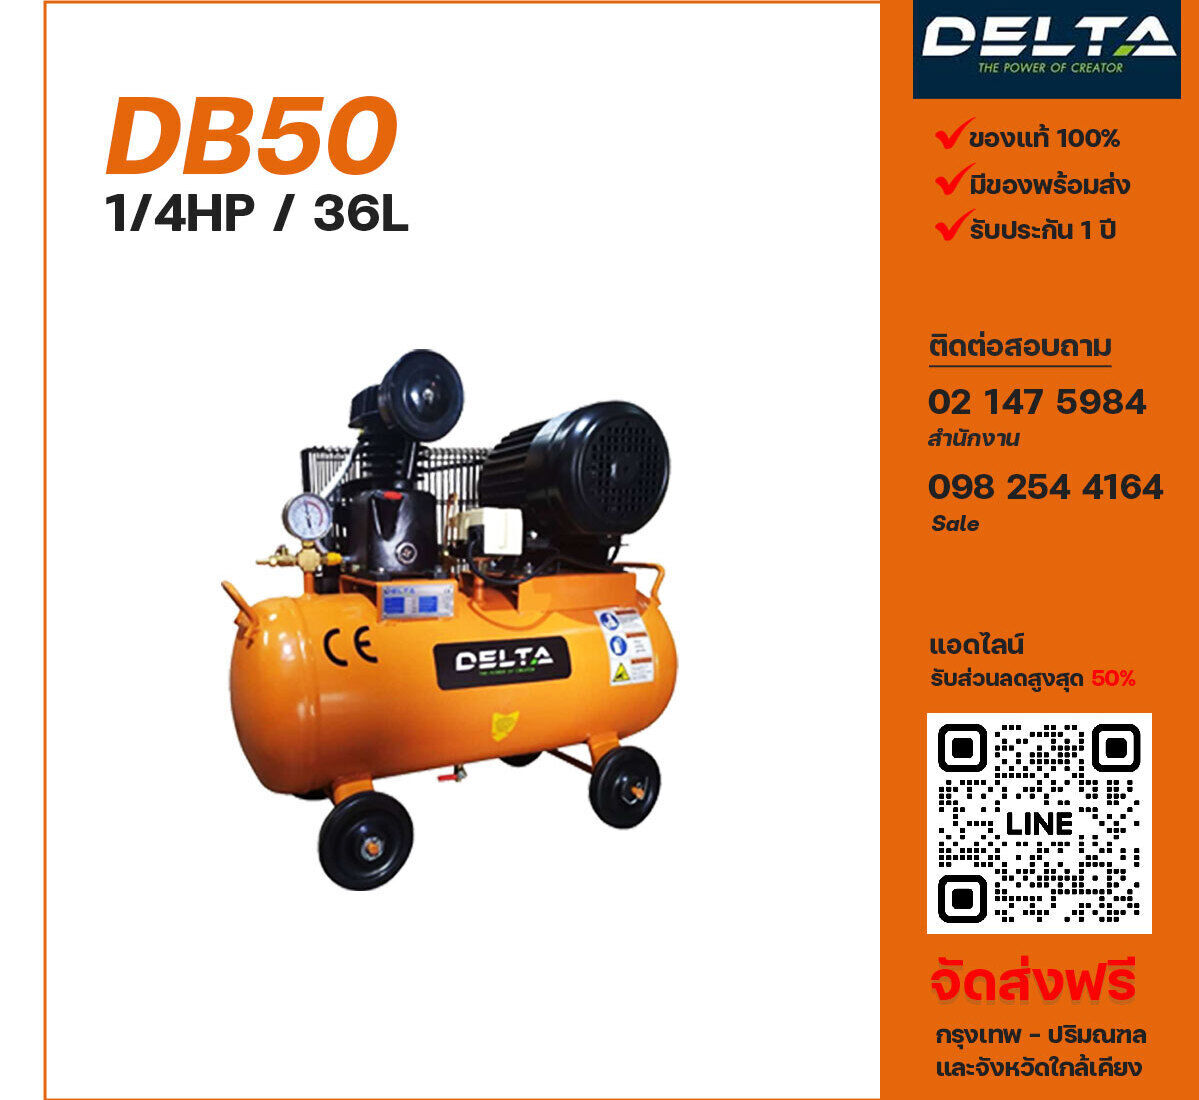 ปั๊มลมเดลต้า DELTA DB50 220V ปั๊มลมลูกสูบ ขนาด 1 สูบ 1/4 แรงม้า 36 ลิตร DELTA พร้อมมอเตอร์ ไฟ 220V ส่งฟรี กรุงเทพฯ-ปริมณฑล รับประกัน 1 ปี